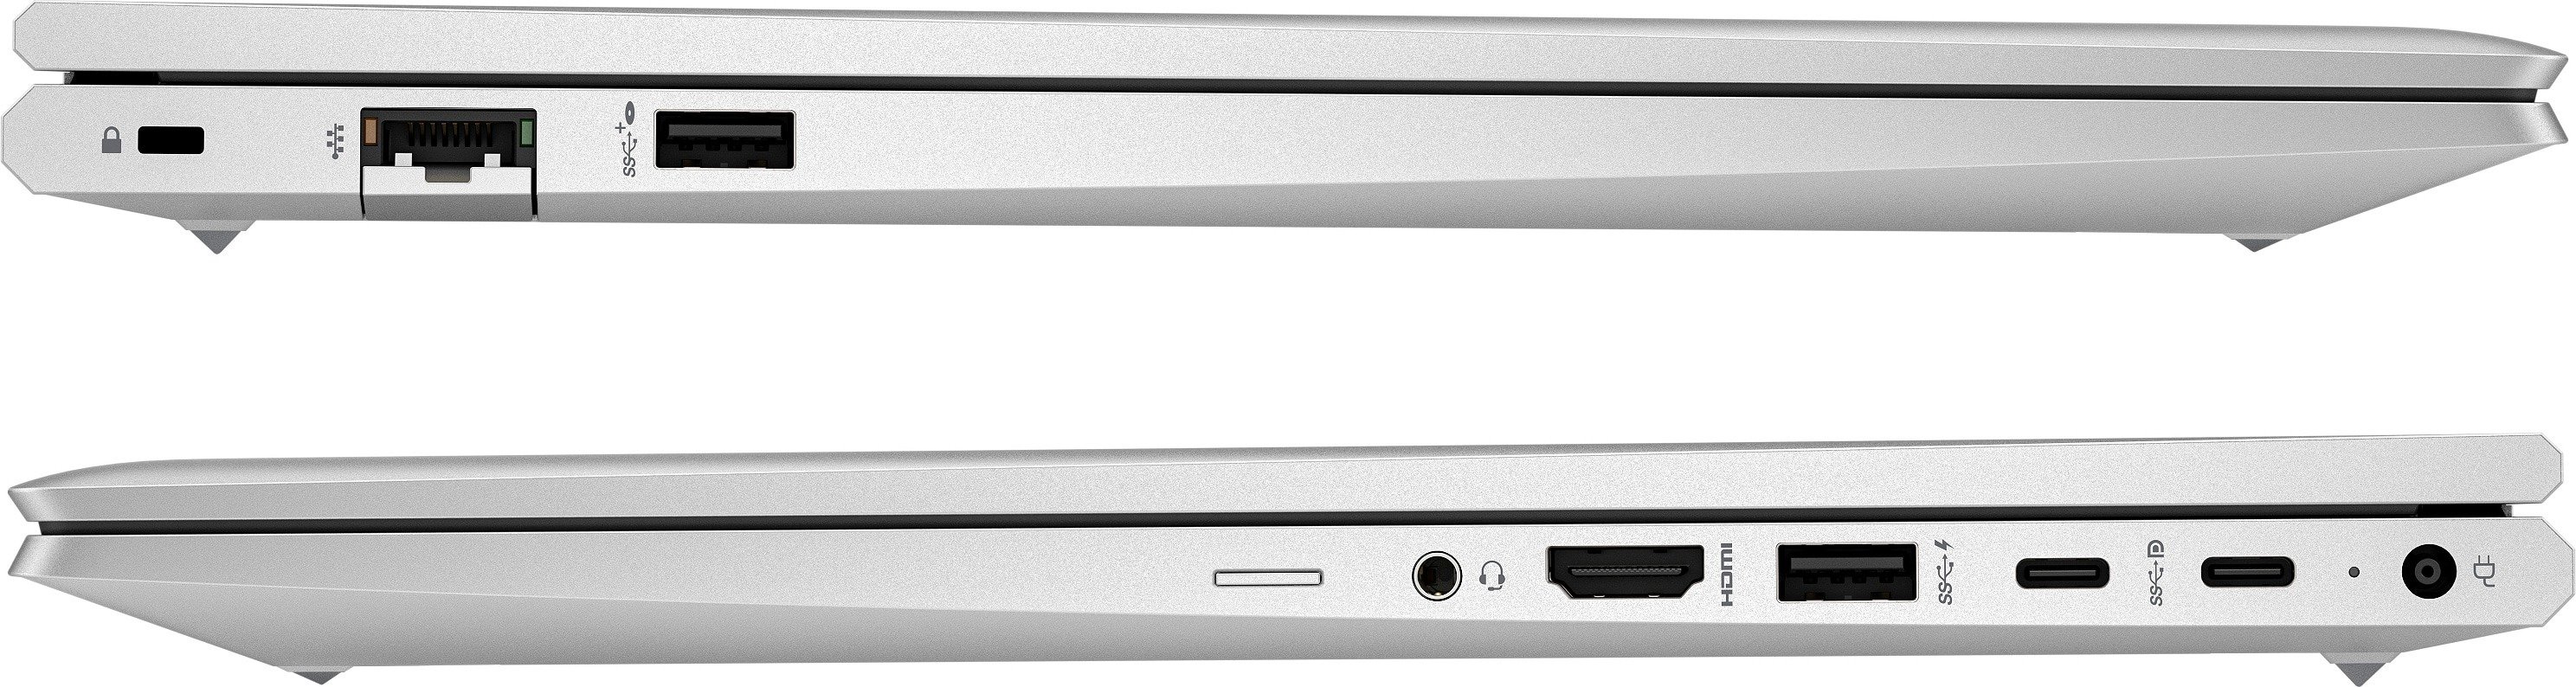 Ноутбук HP Probook 450-G10 (85C01EA)фото8